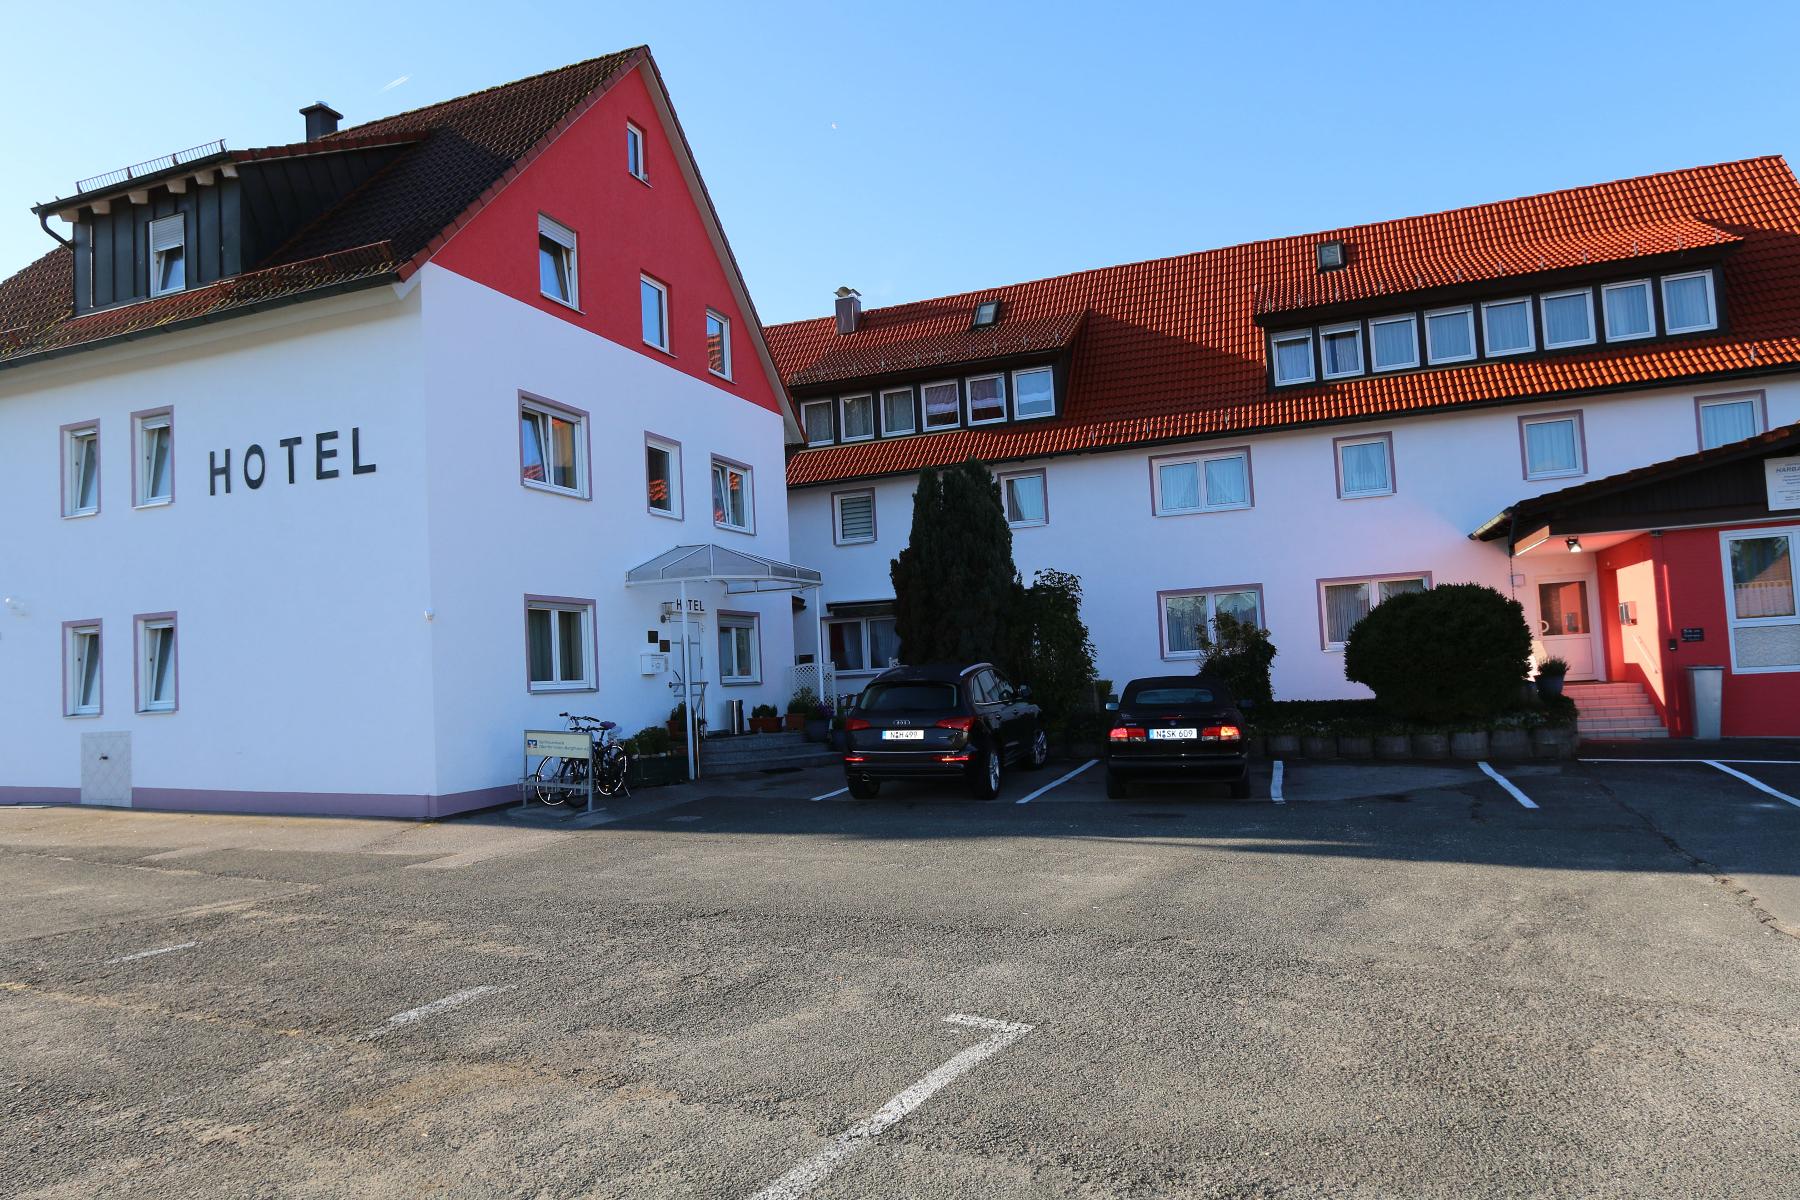 Dieses ruhig gelegene 3-Sterne-Hotel befindet sich nur 3km von der Gemeinde Schwarzenbruck und eine 20-minütige Fahrt von Nürnberg entfernt. Das Hotel Harbauer verfügt über großzügige Zimmer, die mit Liebe zum Detail stilvoll modern eingerichtet sind.Ein reichhaltiges Frühstücksbuffet ...
                 title=